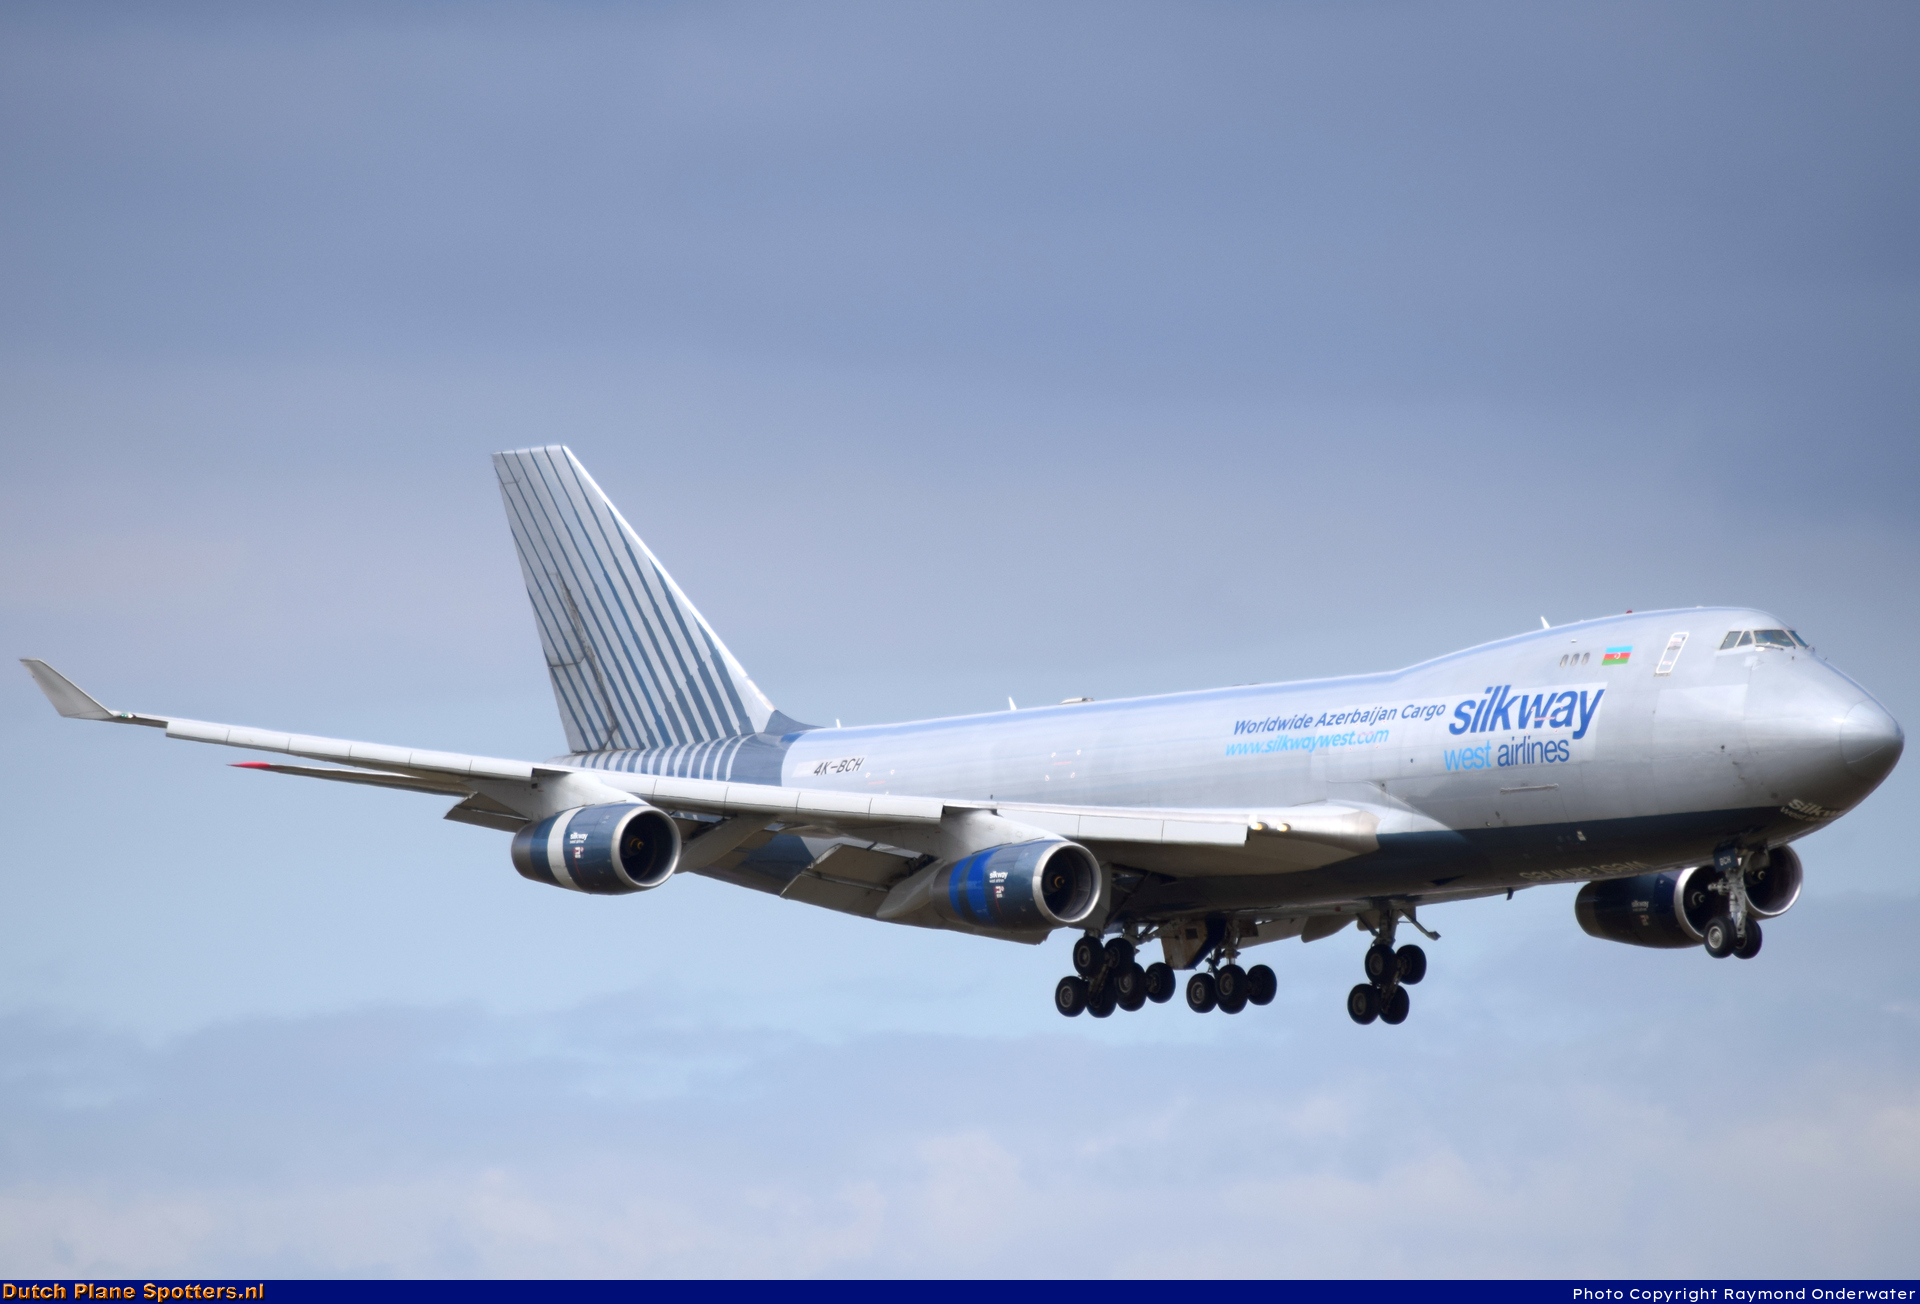 4K-BCH Boeing 747-400 Silk Way West Airlines by Raymond Onderwater